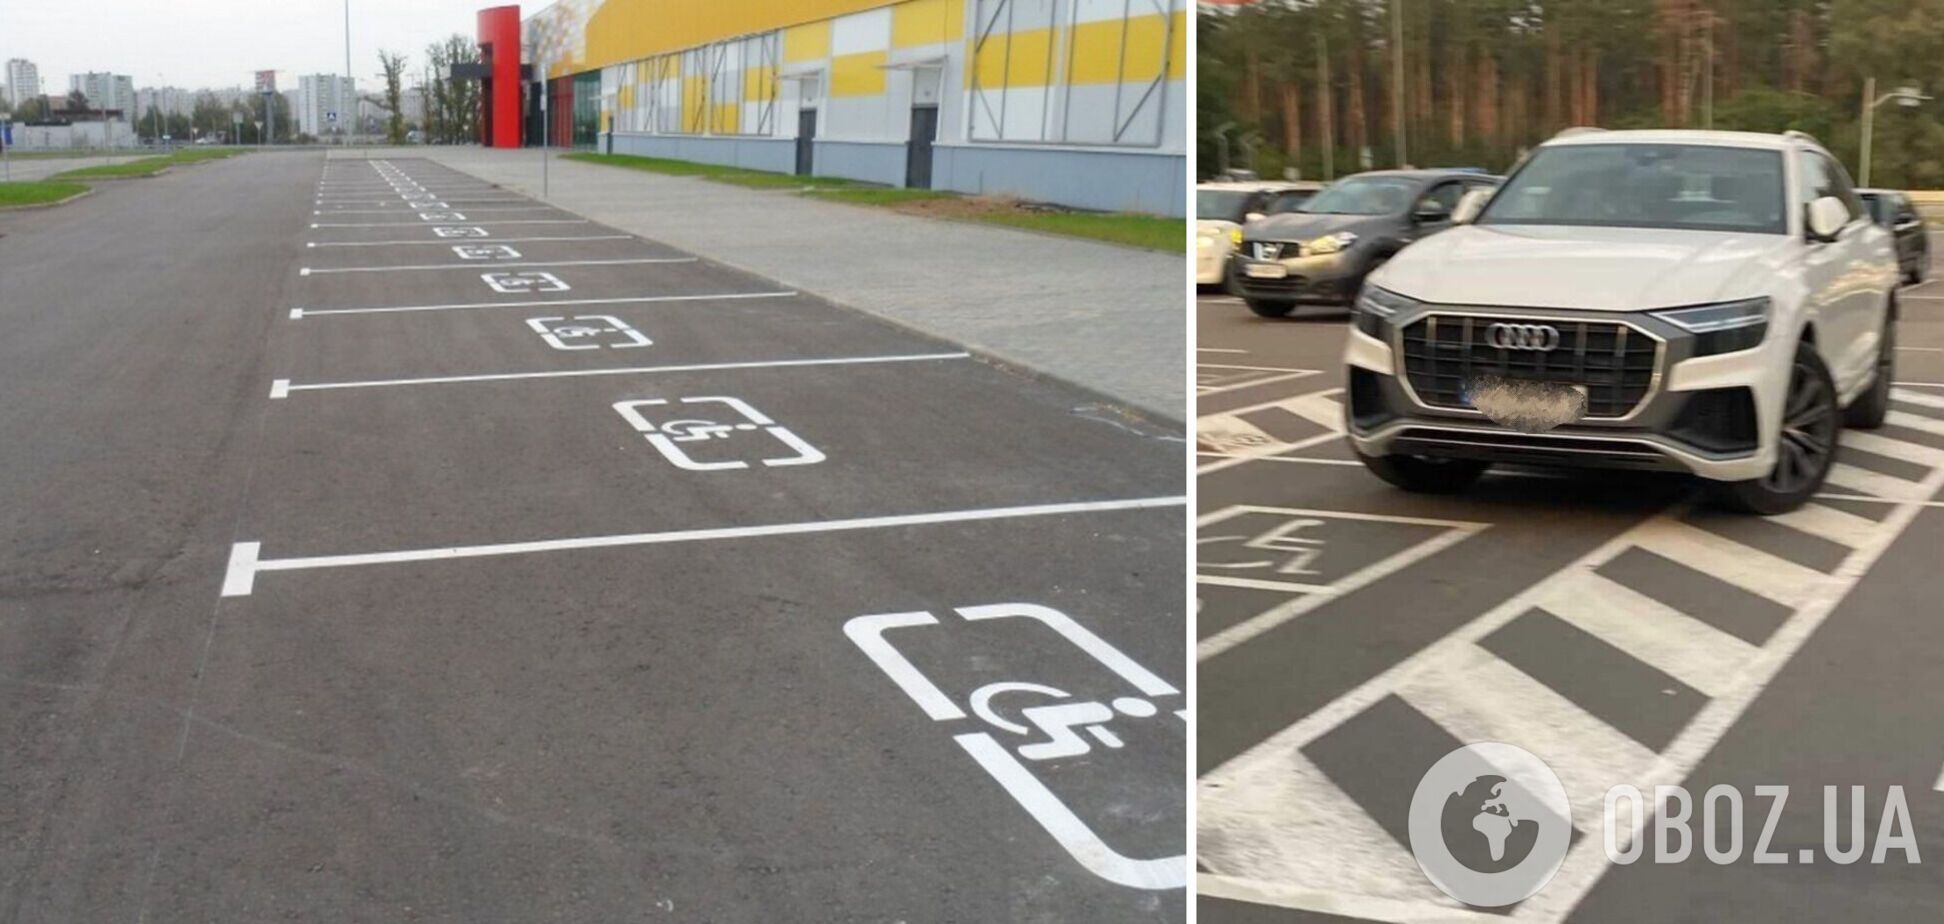 Водій припаркувався одразу на двох місцях для людей з інвалідністю